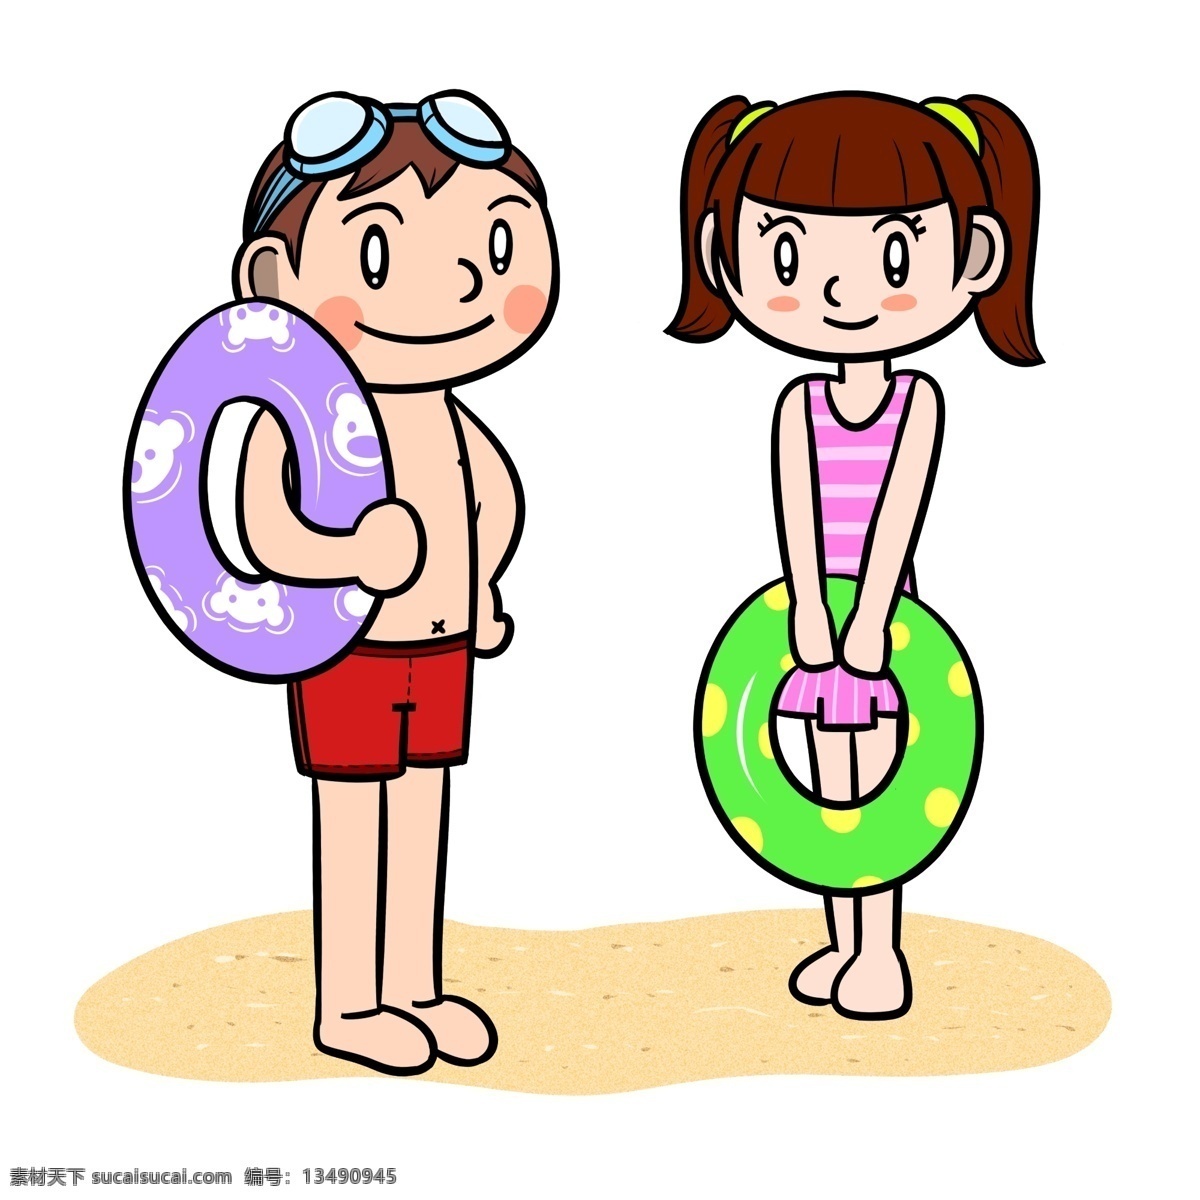 卡通 夏季 儿童 沙滩 玩乐 透明 底 夏天 玩耍 海边 海滩 海边人物 夏季人物 夏天人物 卡通人物 卡通夏季